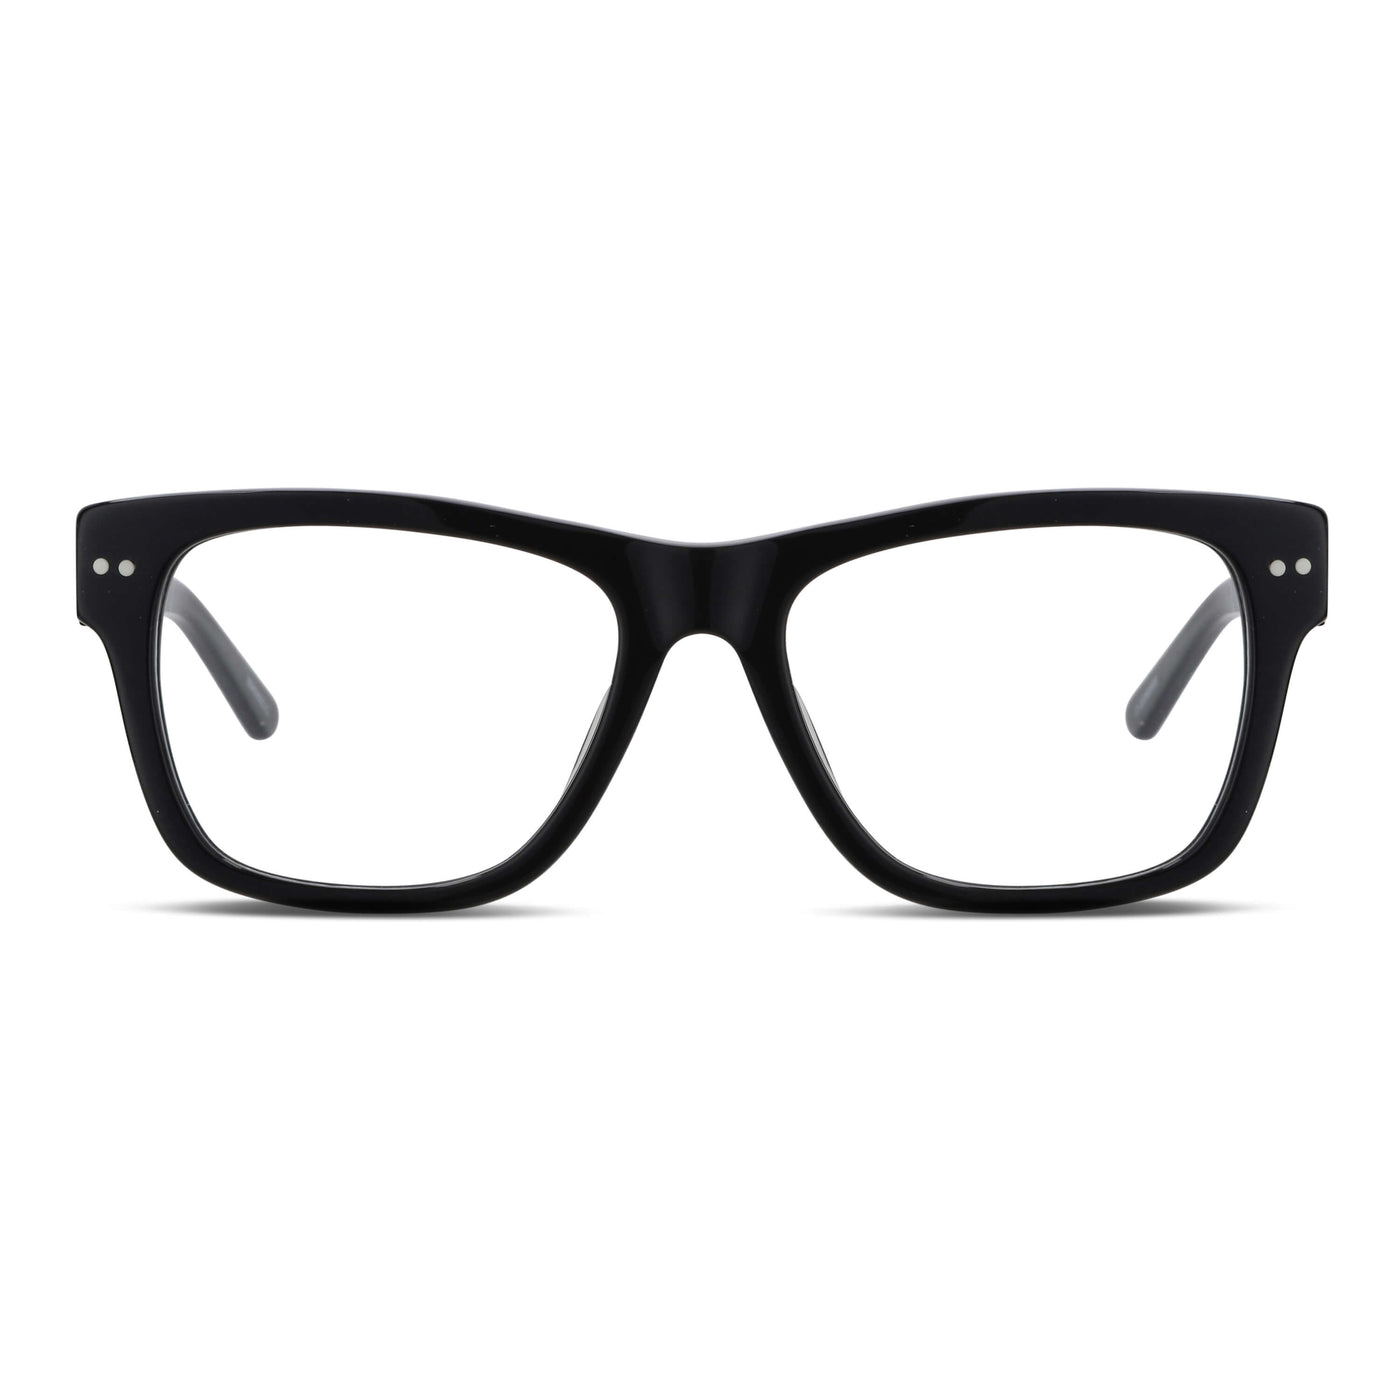  lentes agatados gruesos hombre mujer cara redonda opticos multifocales bifocales receta mayorista distribuidor sustentables negros.jpg